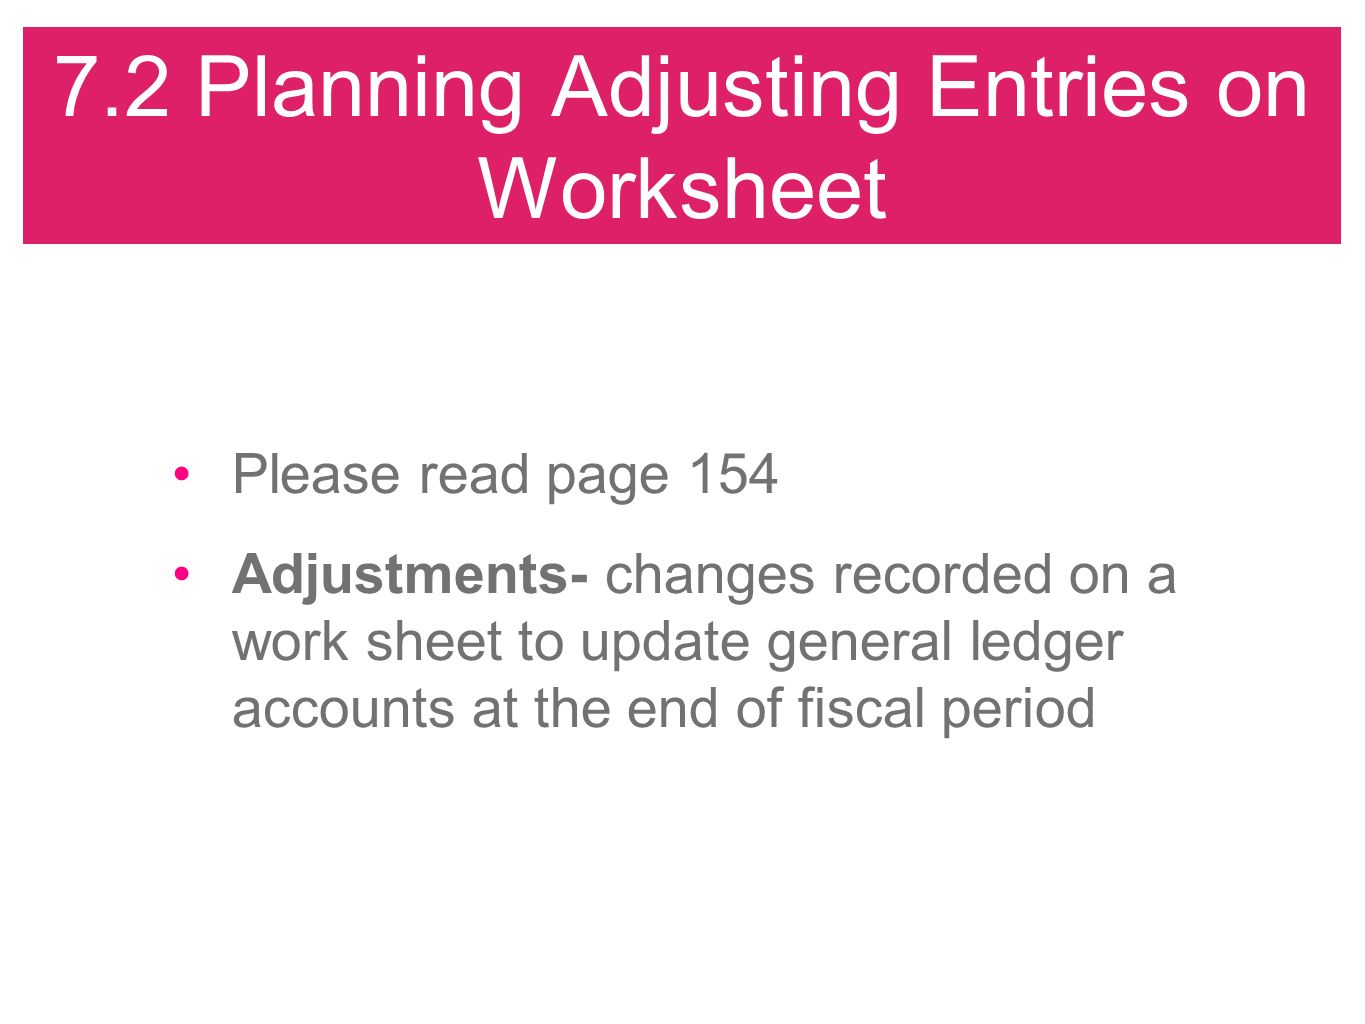 7.2 Planning Adjusting Entries on Worksheet